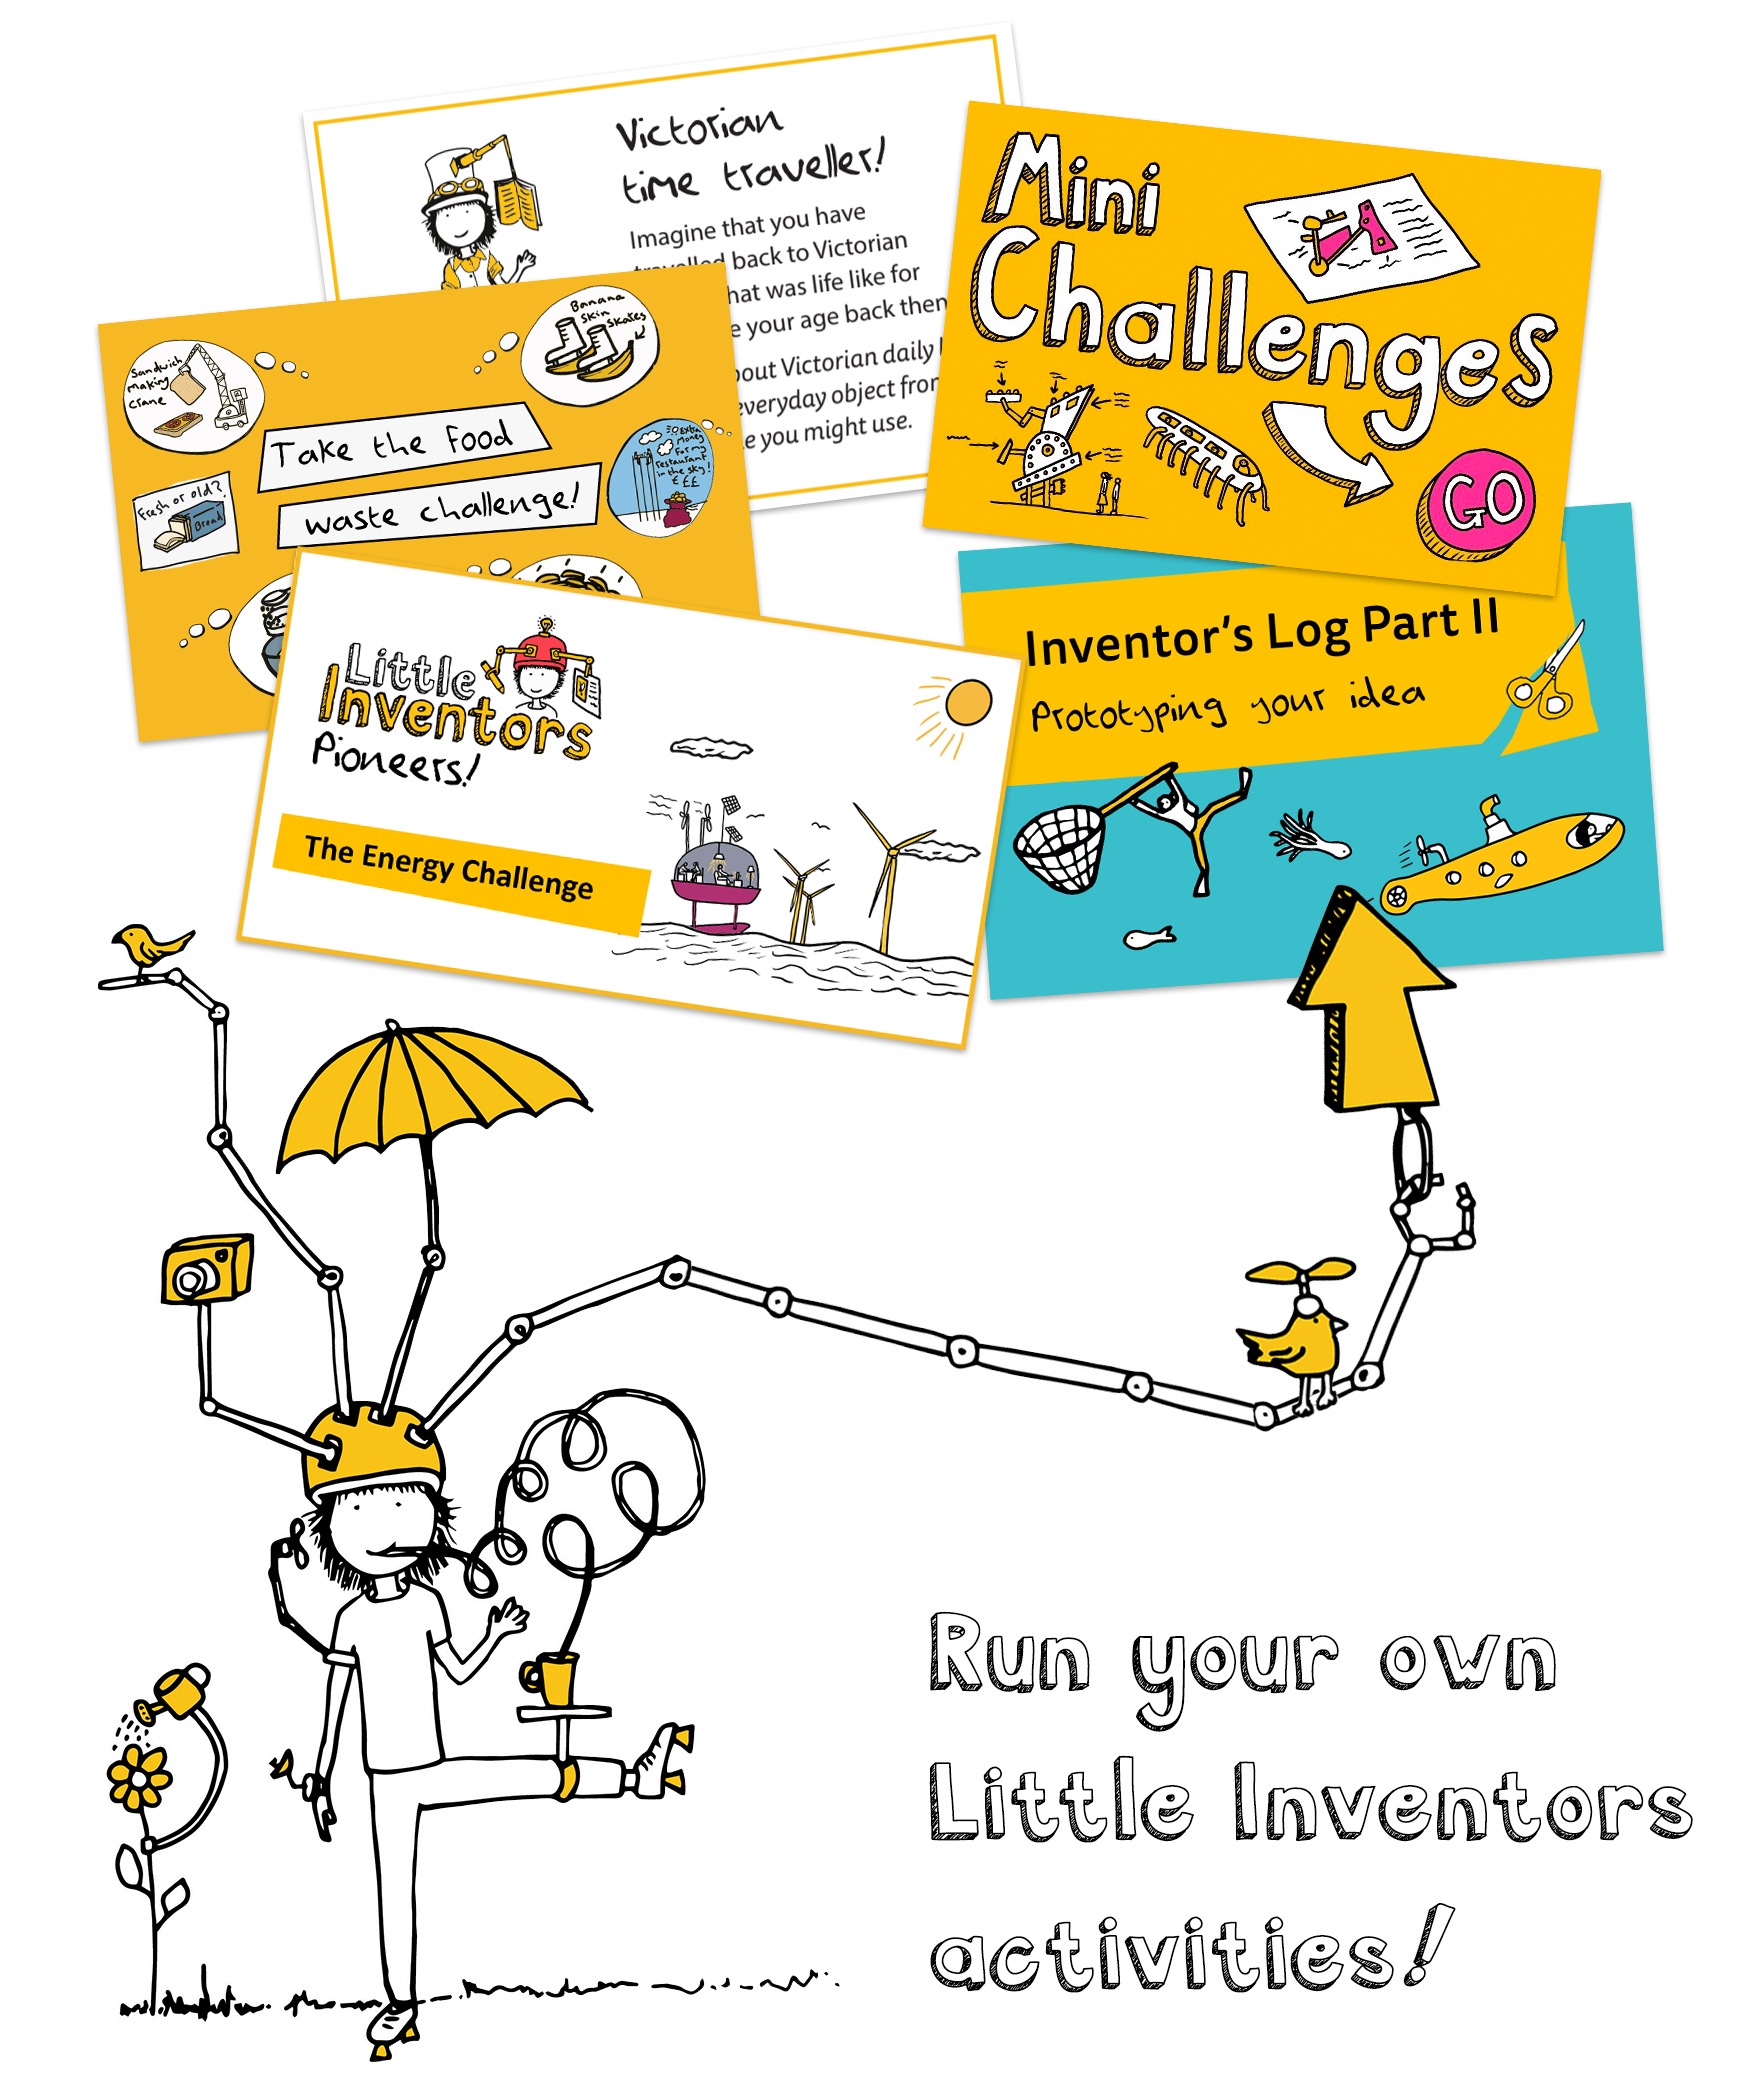 Run your own Little Inventors activities!